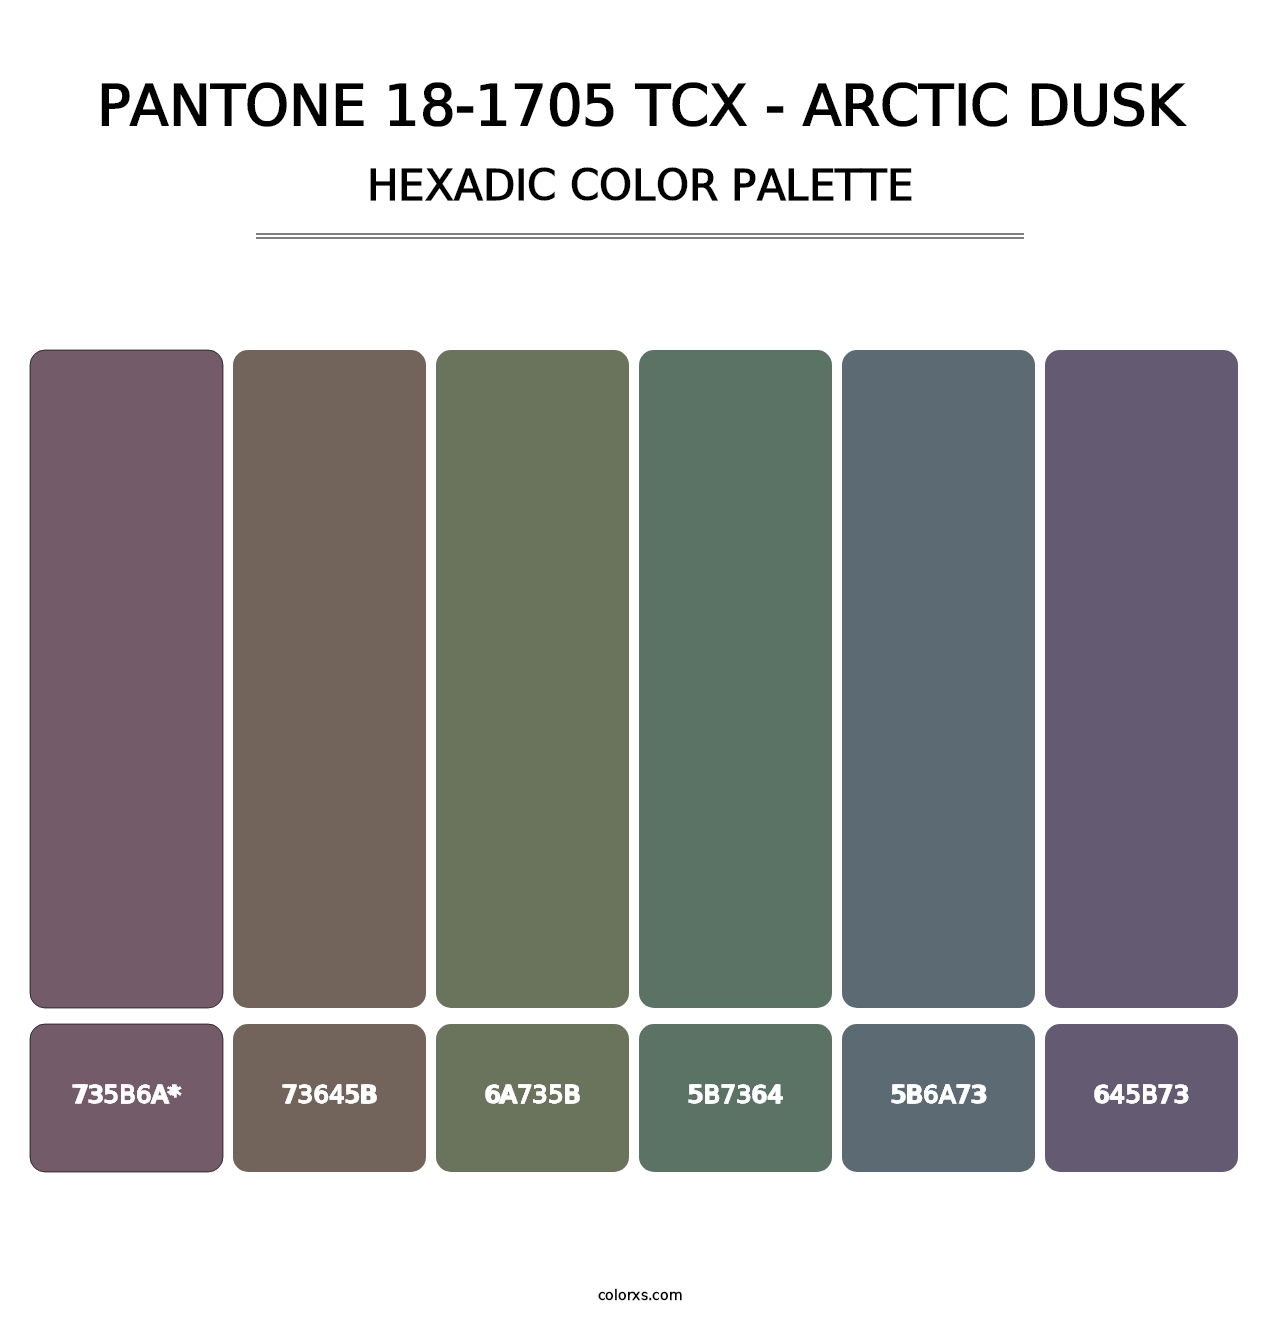 PANTONE 18-1705 TCX - Arctic Dusk - Hexadic Color Palette